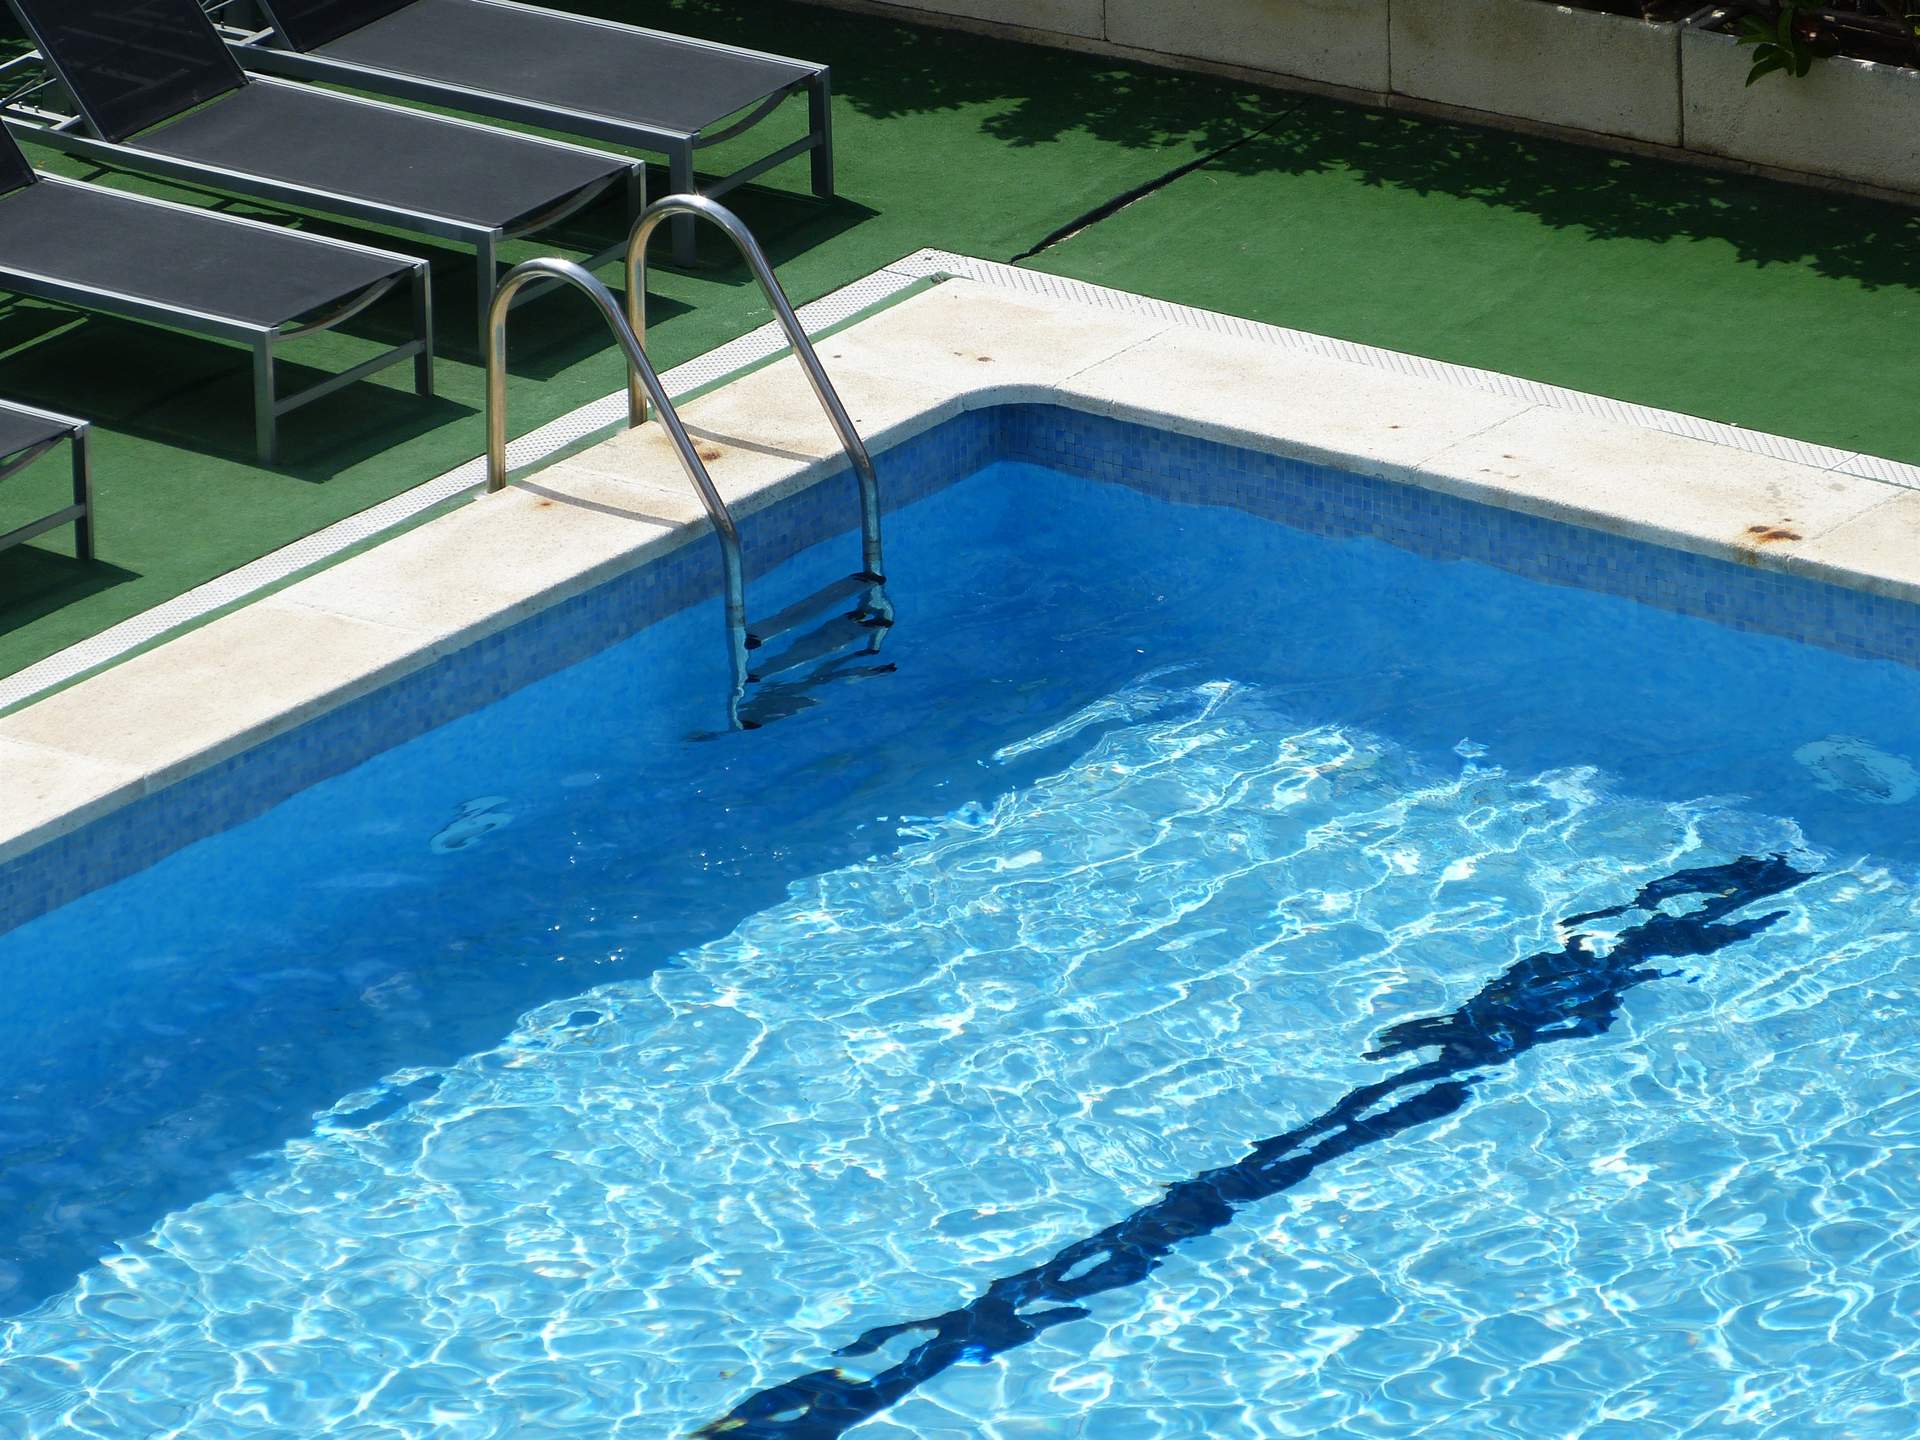 El Govern plantea que las piscinas privadas rellenadas con agua desalada sean refugios climáticos